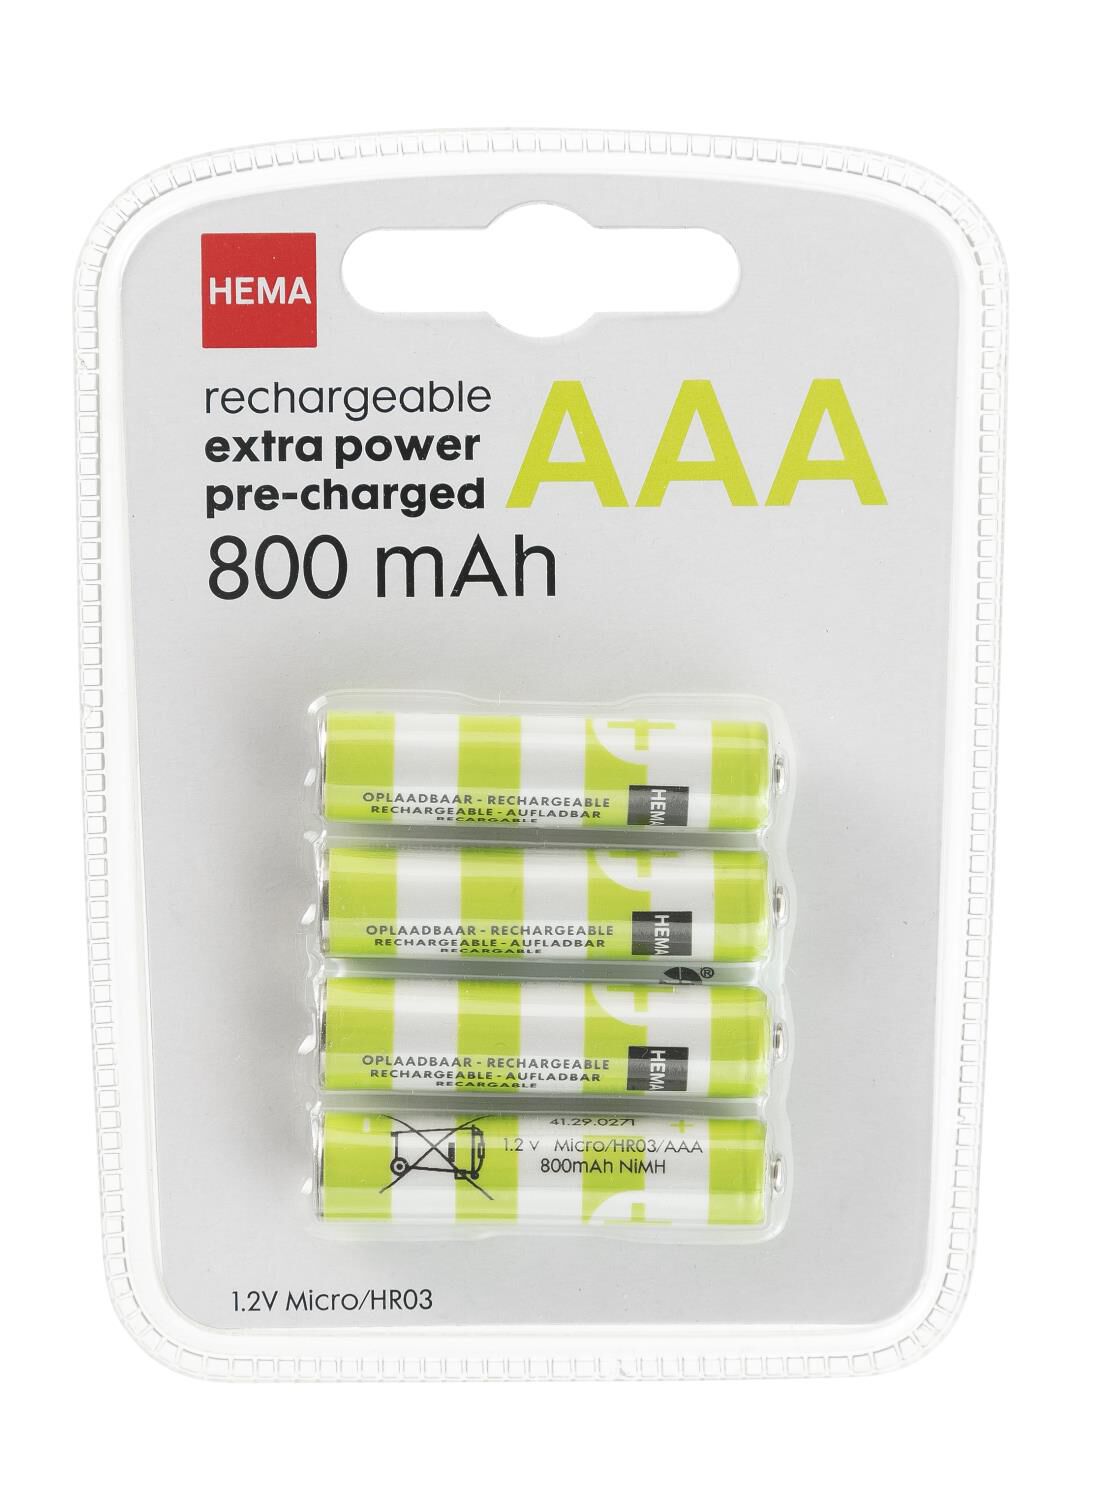 optie Vertrappen Emotie oplaadbare AAA batterijen 800mAh - 4 stuks - HEMA